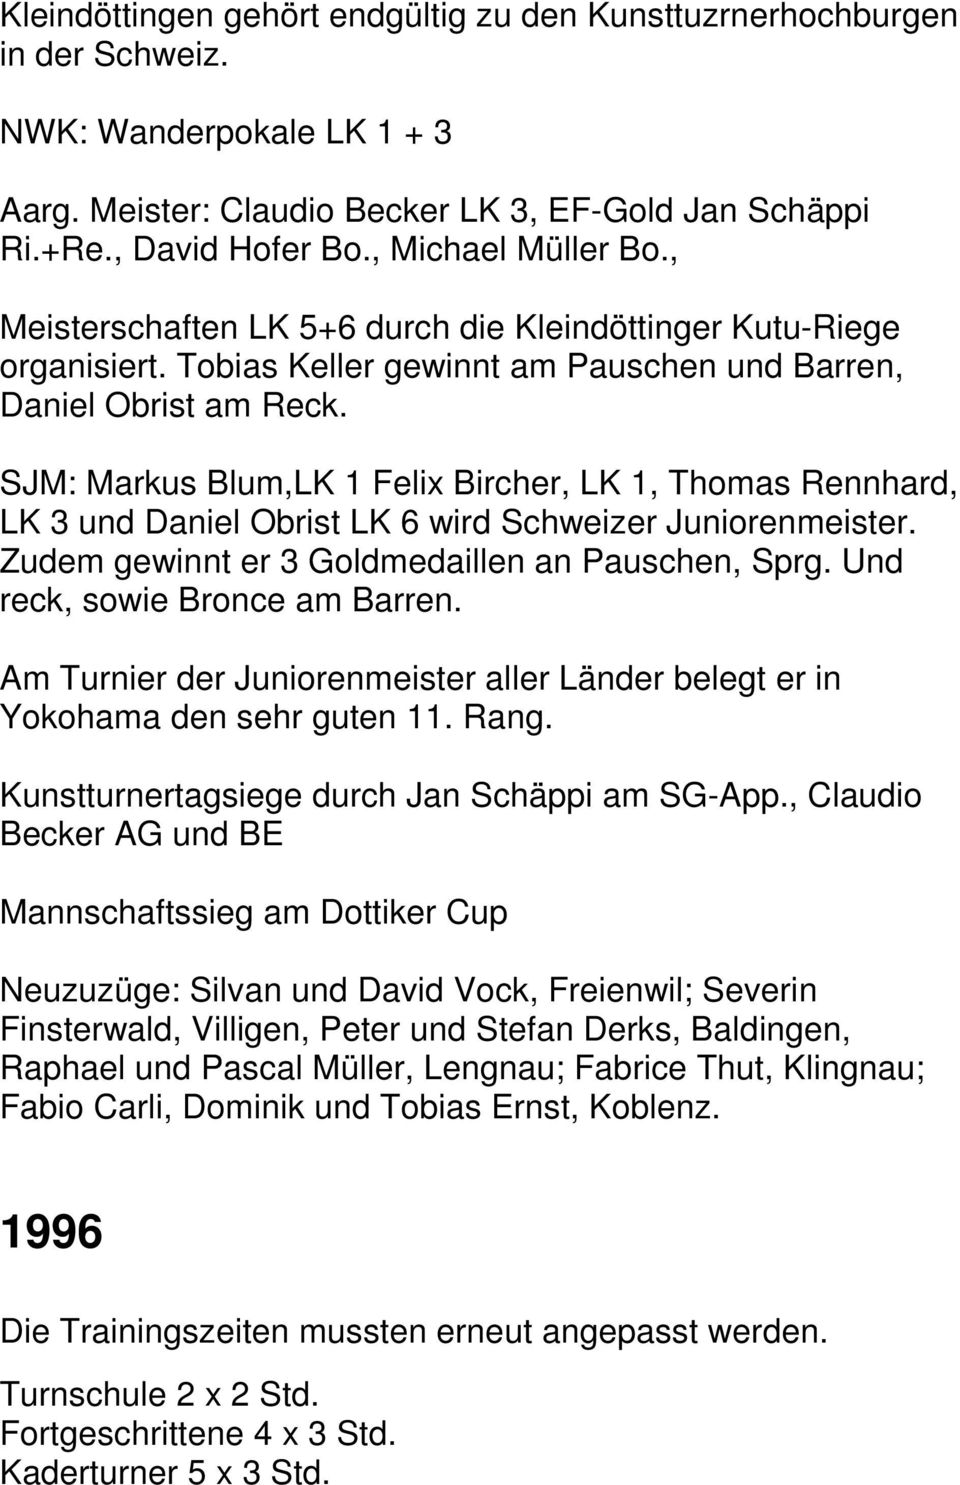 SJM: Markus Blum,LK 1 Felix Bircher, LK 1, Thomas Rennhard, LK 3 und Daniel Obrist LK 6 wird Schweizer Juniorenmeister. Zudem gewinnt er 3 Goldmedaillen an Pauschen, Sprg.